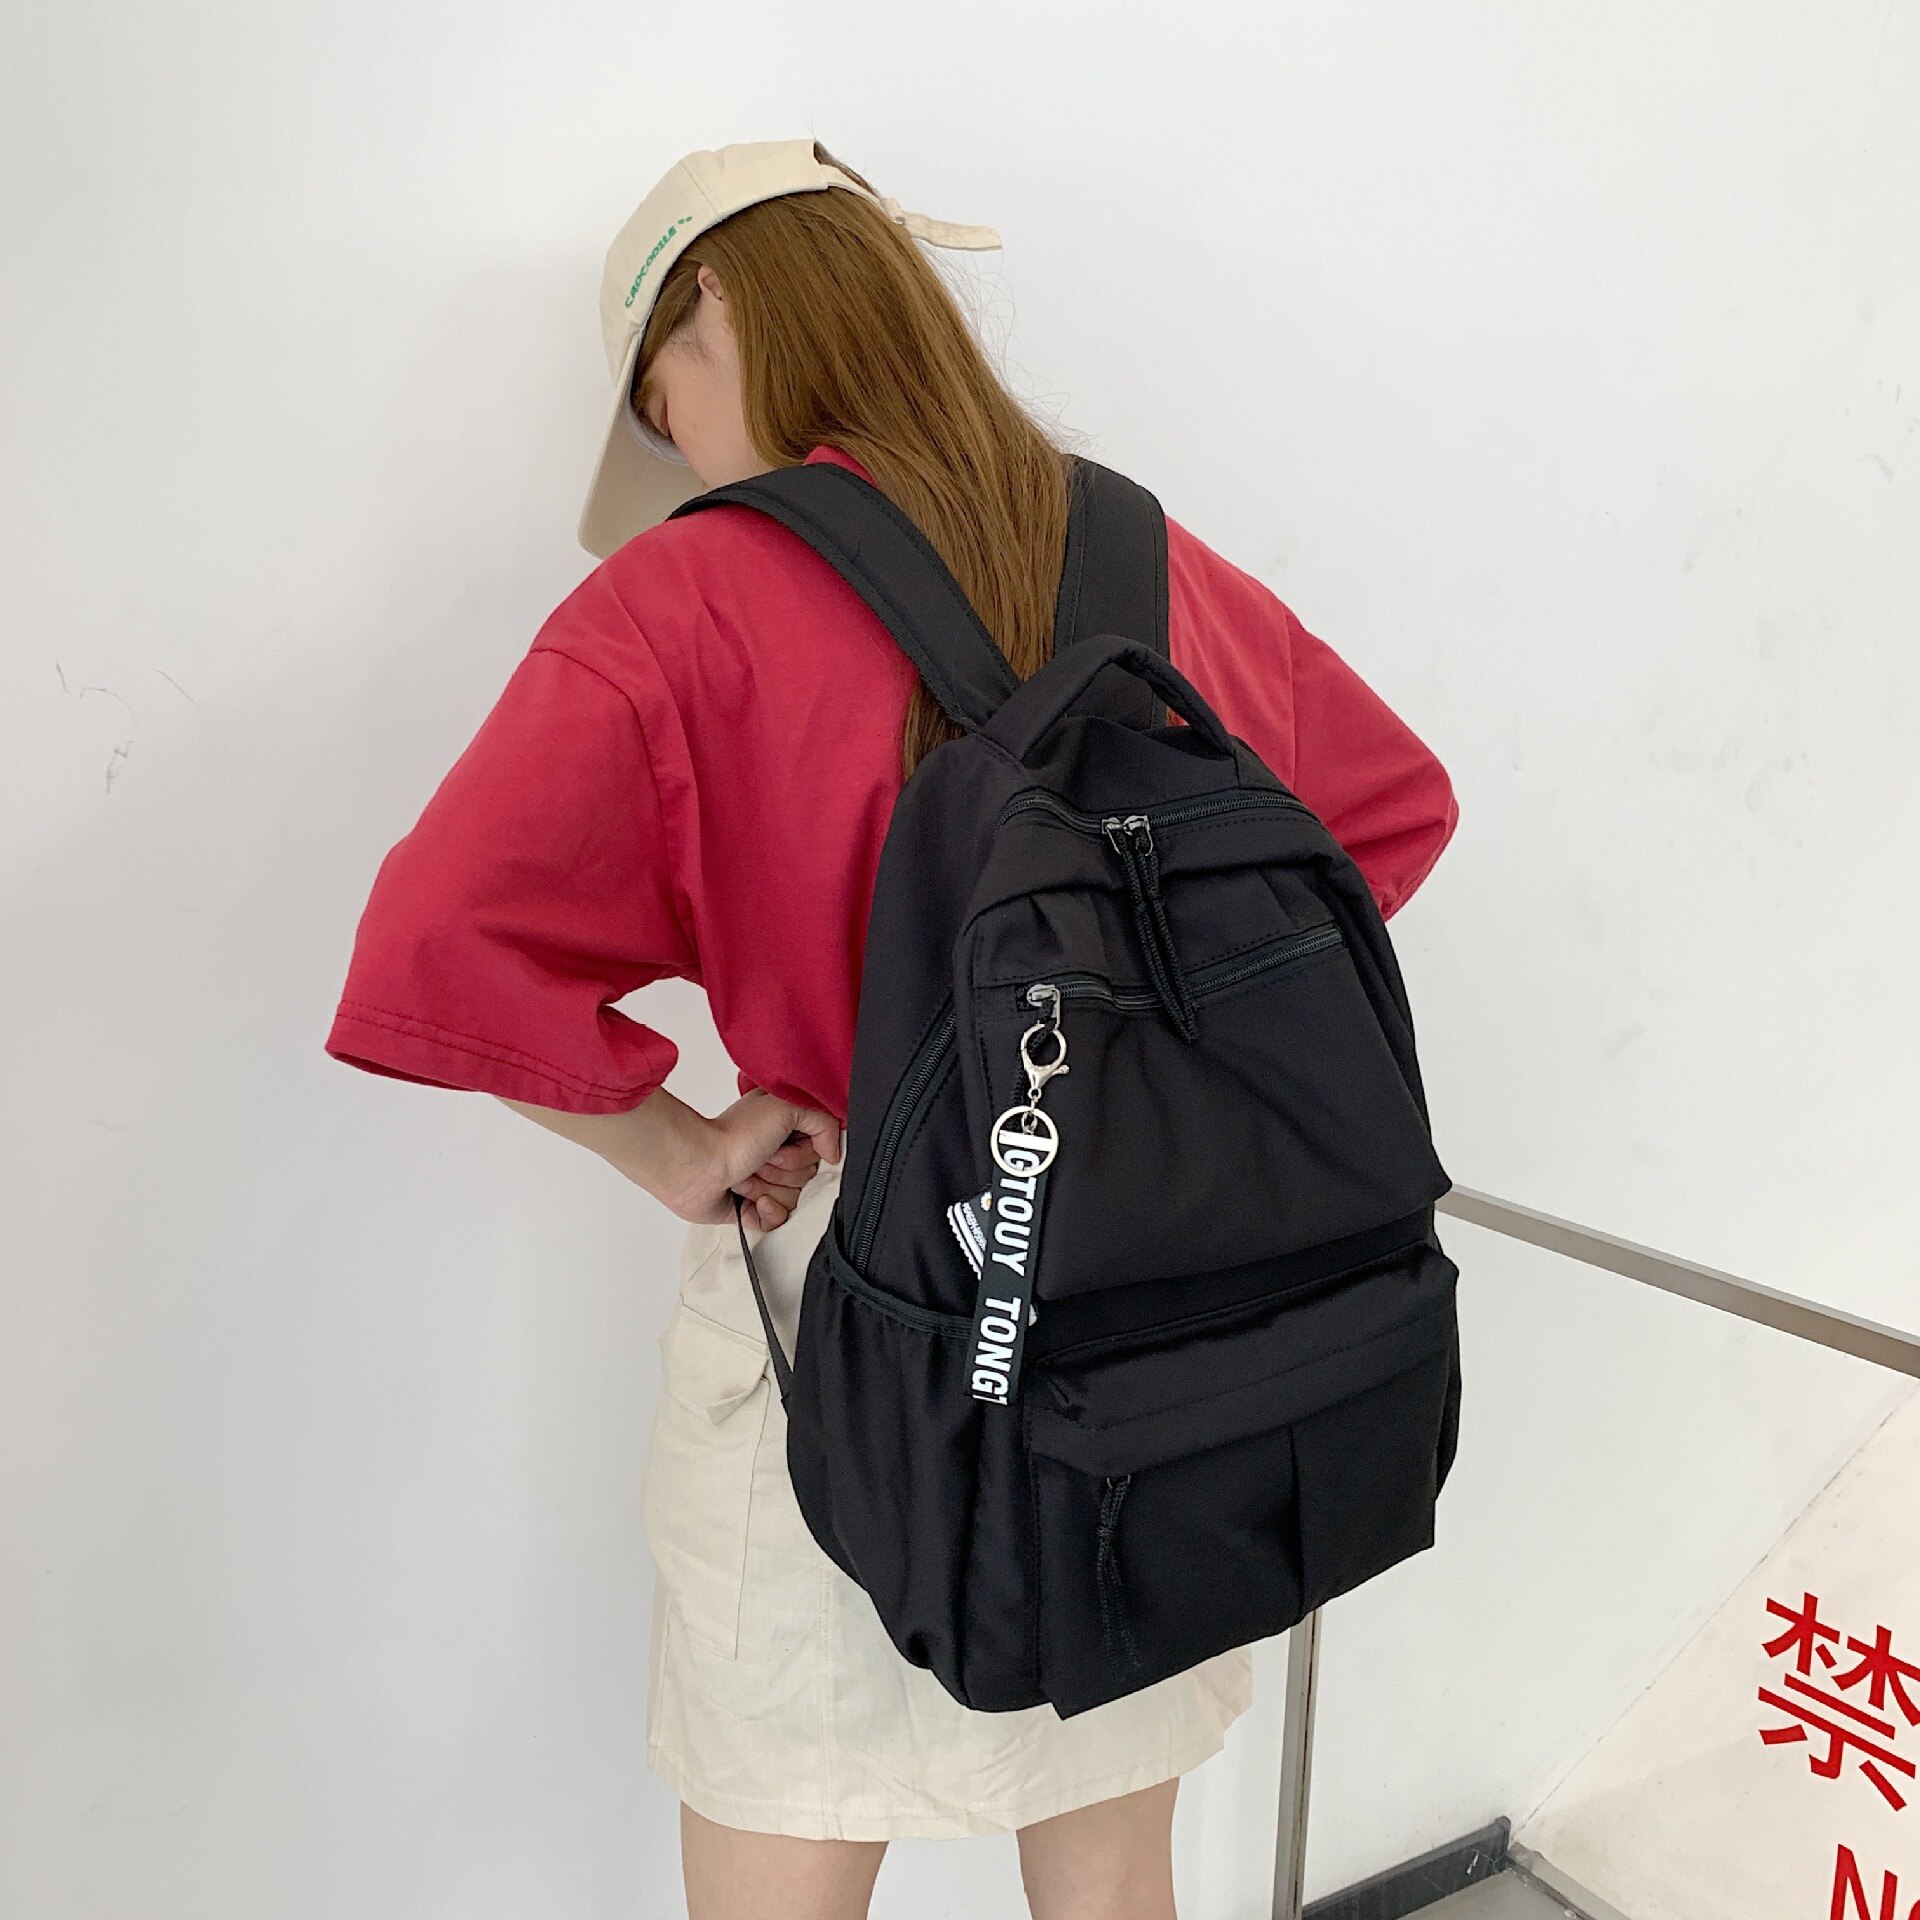 Chuwanglin skoletaske kvindelige studerende laptop rygsæk mænd skoletasker til teenagepiger kvinde rygsække mochila escolar  a90103: Sort